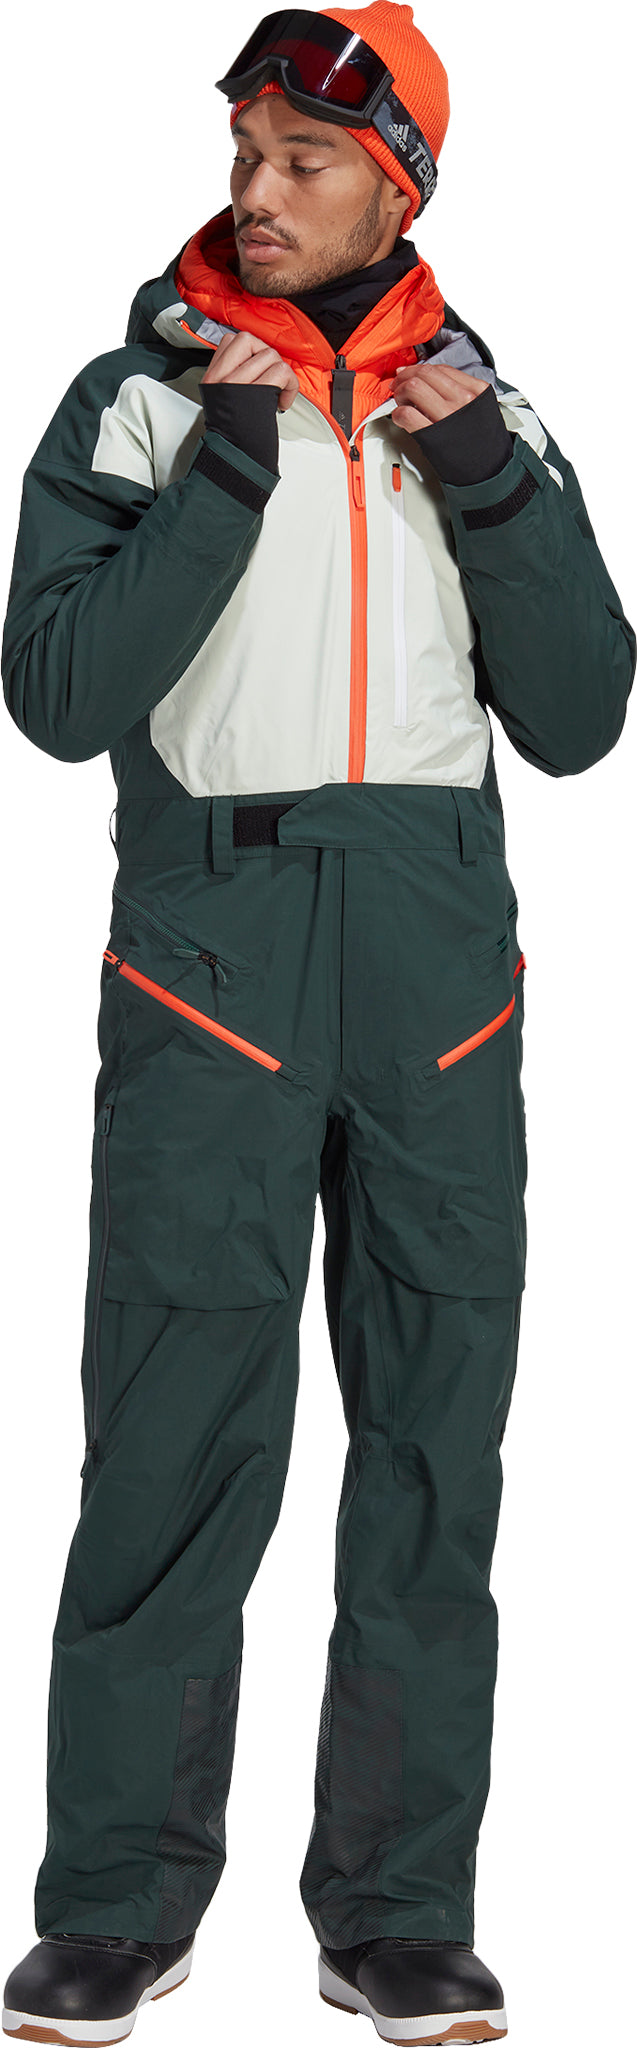 adidas Terrex 3-Layer GORE-TEX Snow Suit - Men's